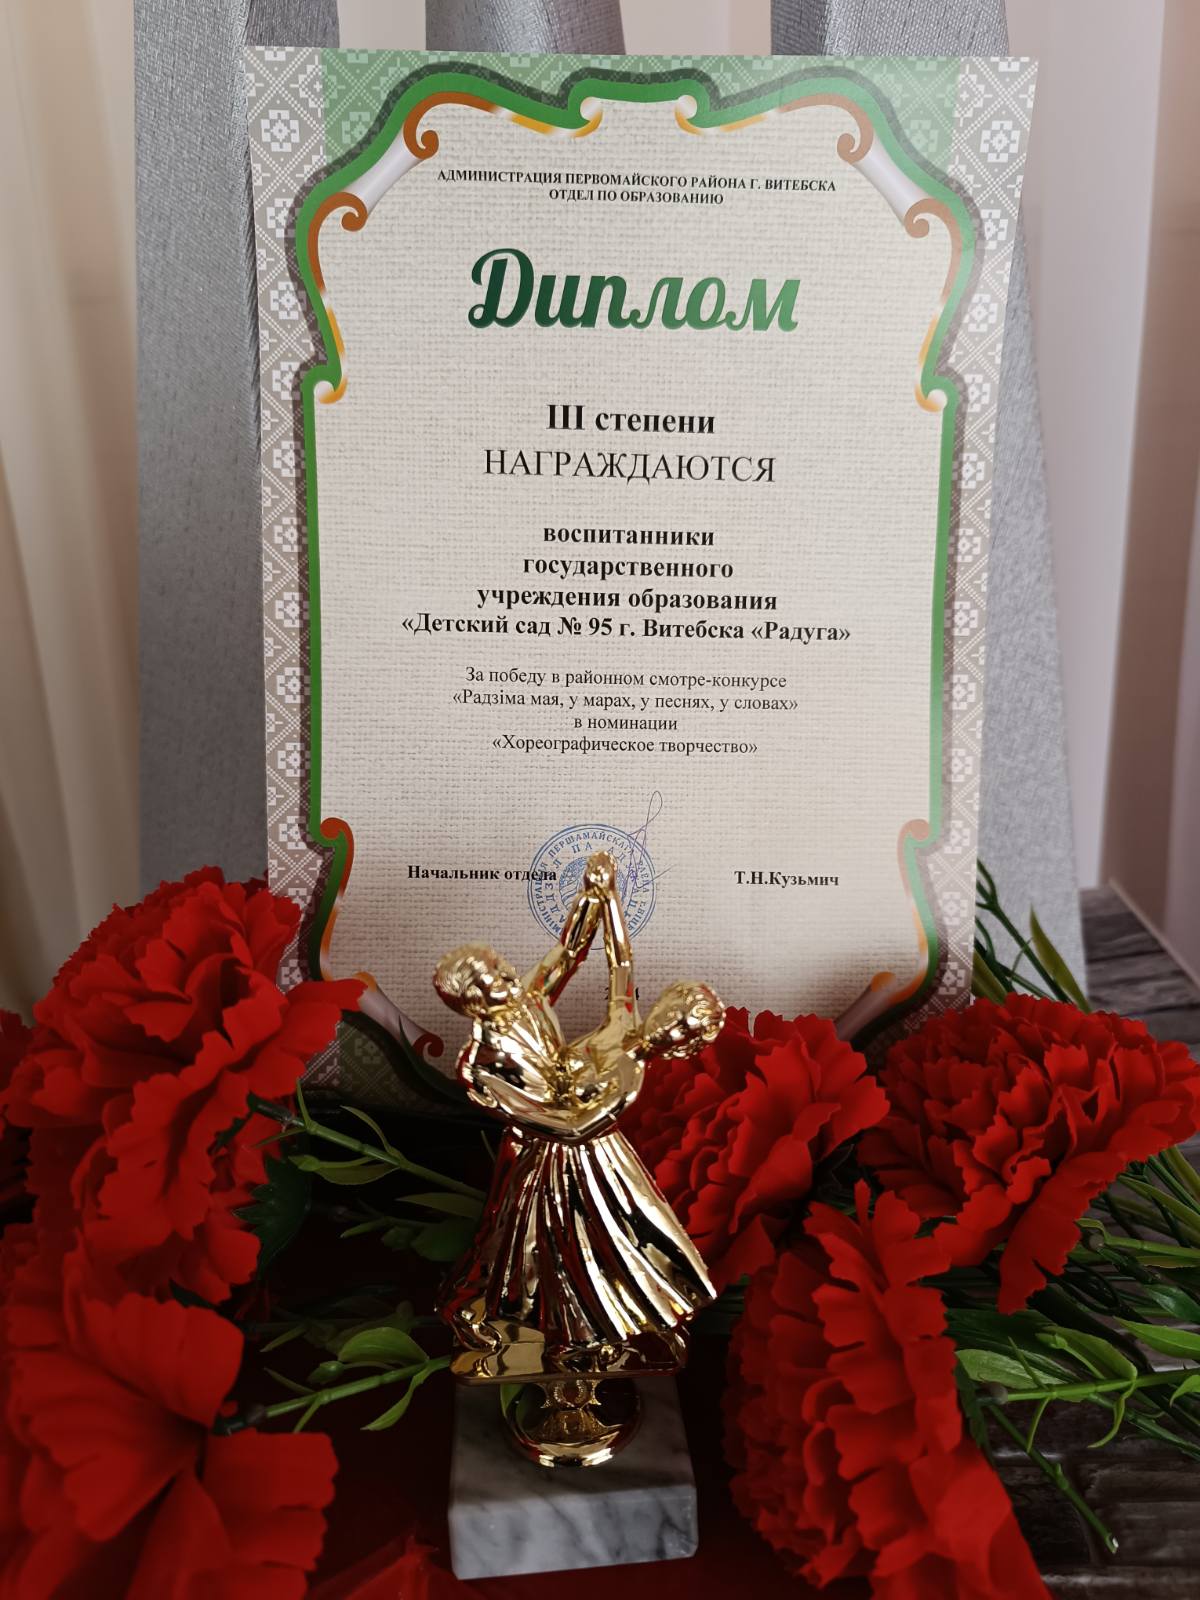 Поздравляем воспитанников с диплом 3 степени в номинации "Хореографическое творчество"